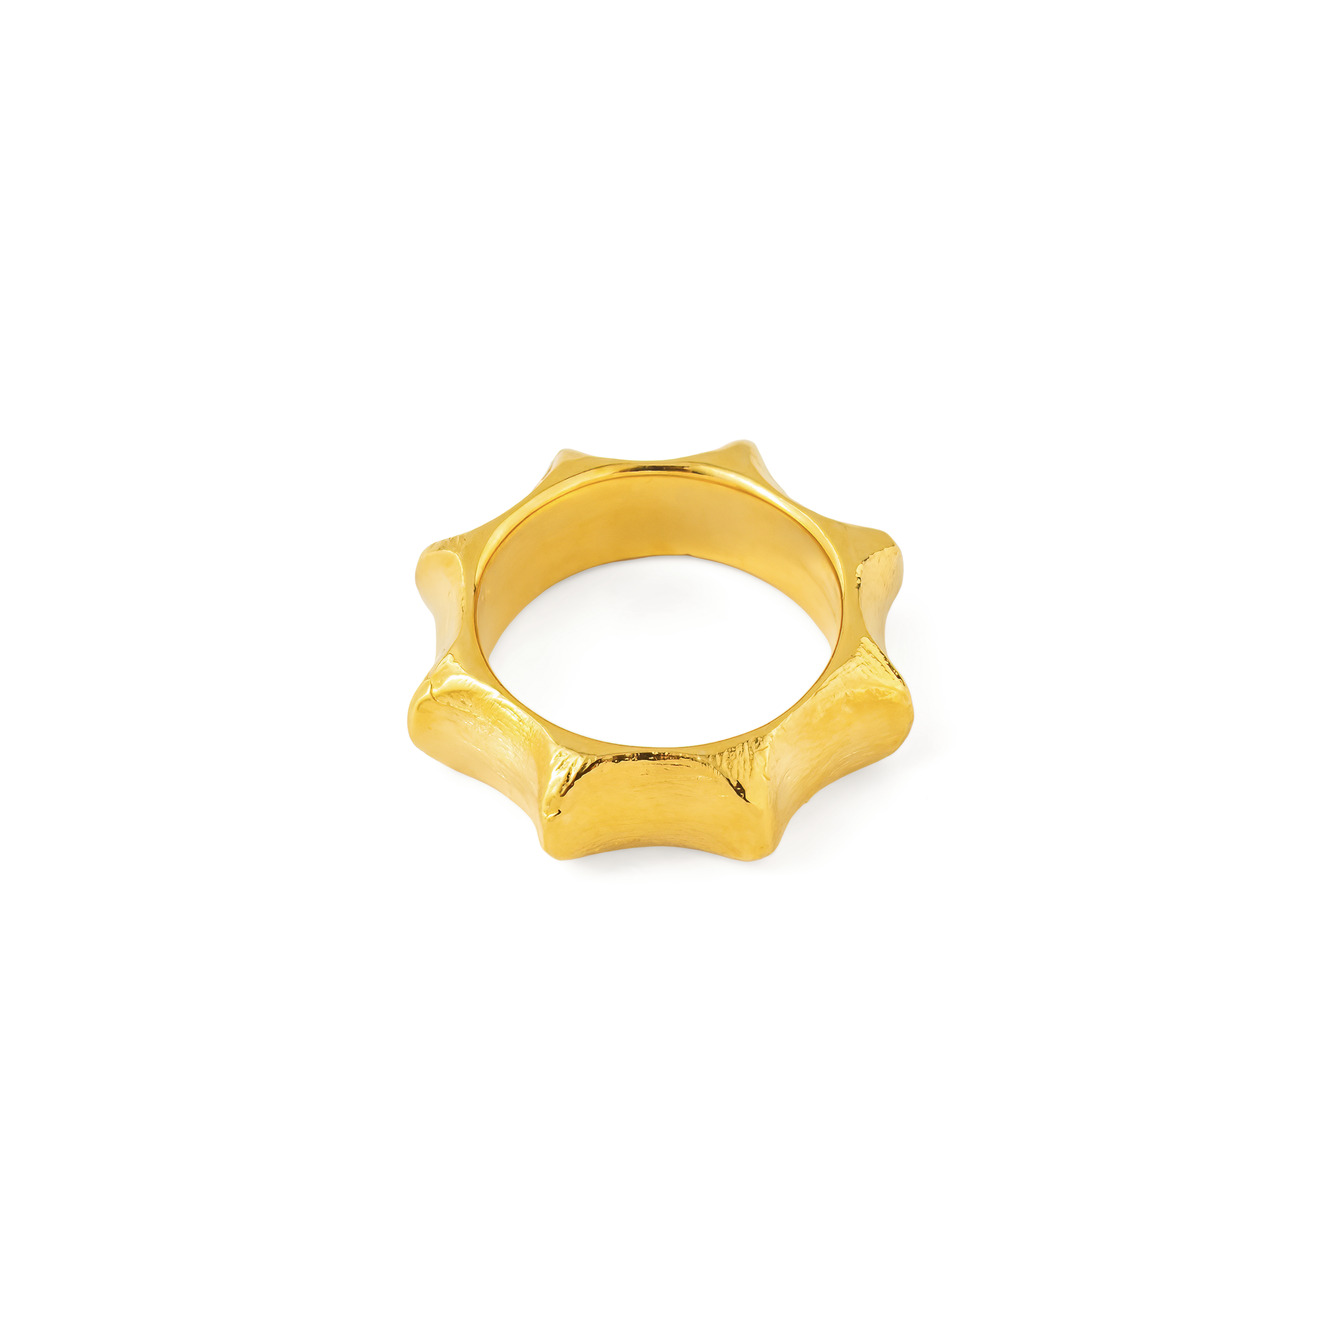 Sevenworlds позолоченное кольцо Starfruit sevenworlds позолоченное кольцо rhombus